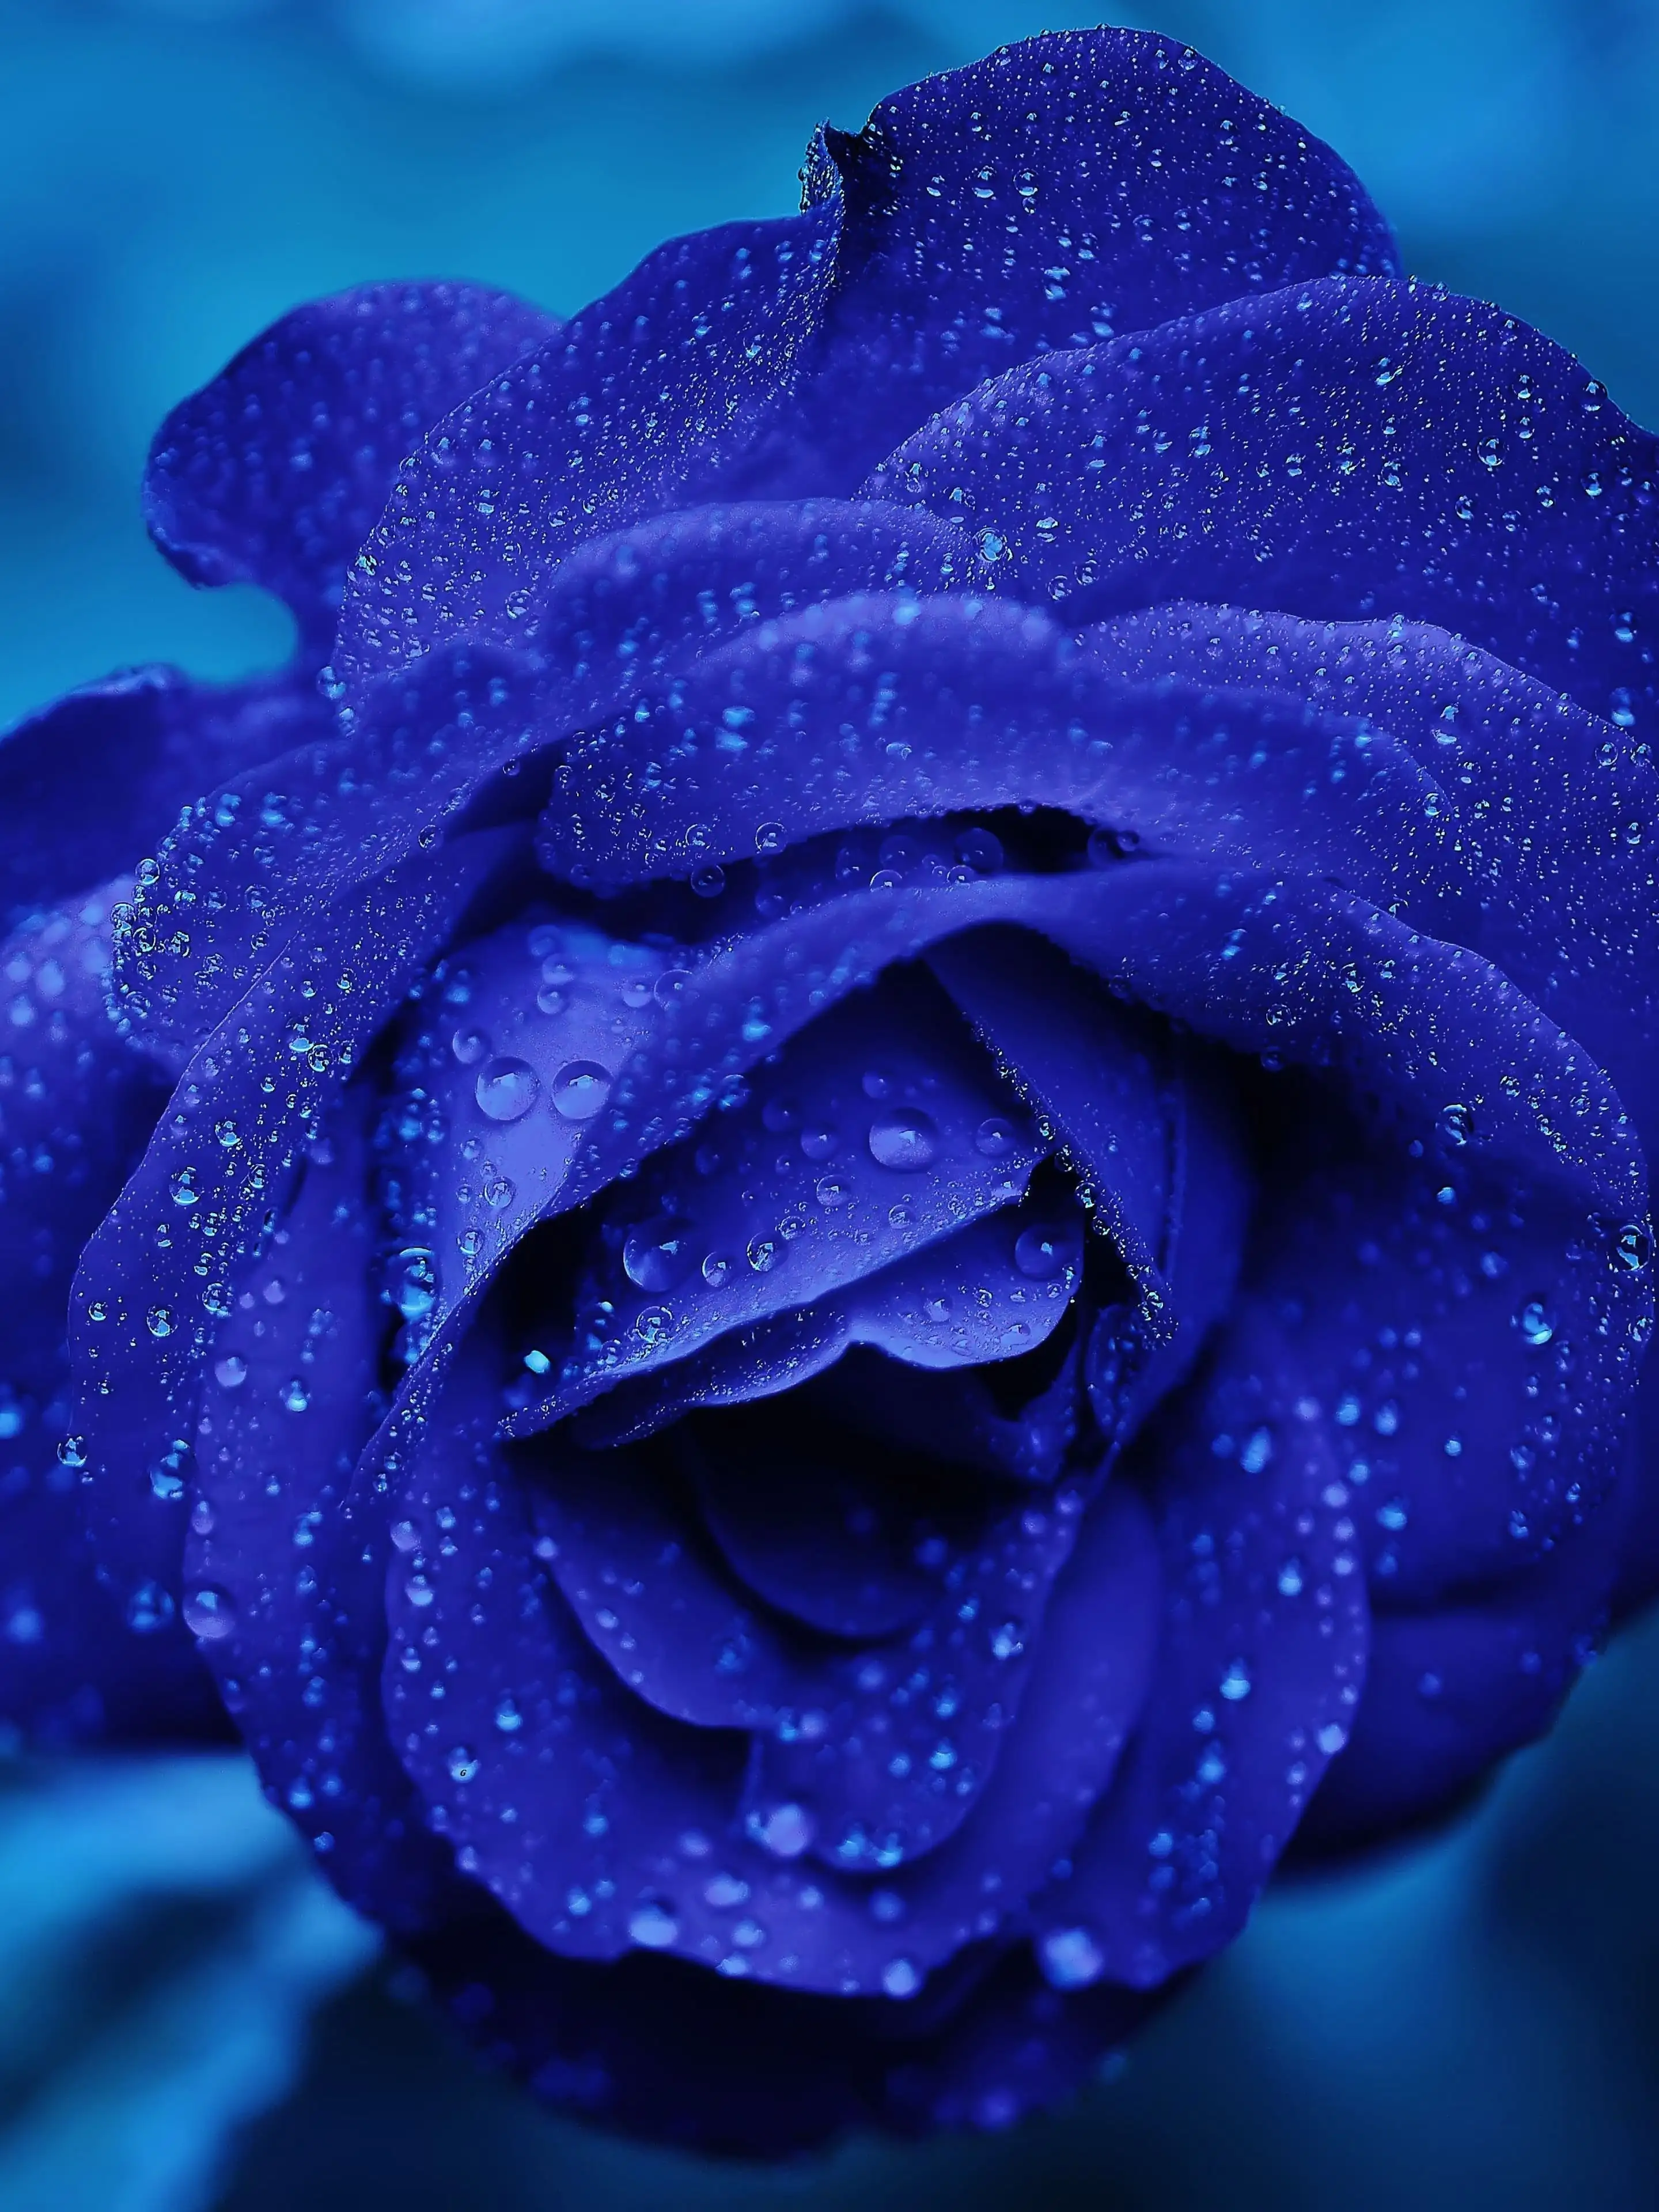 blue rose backgrounds